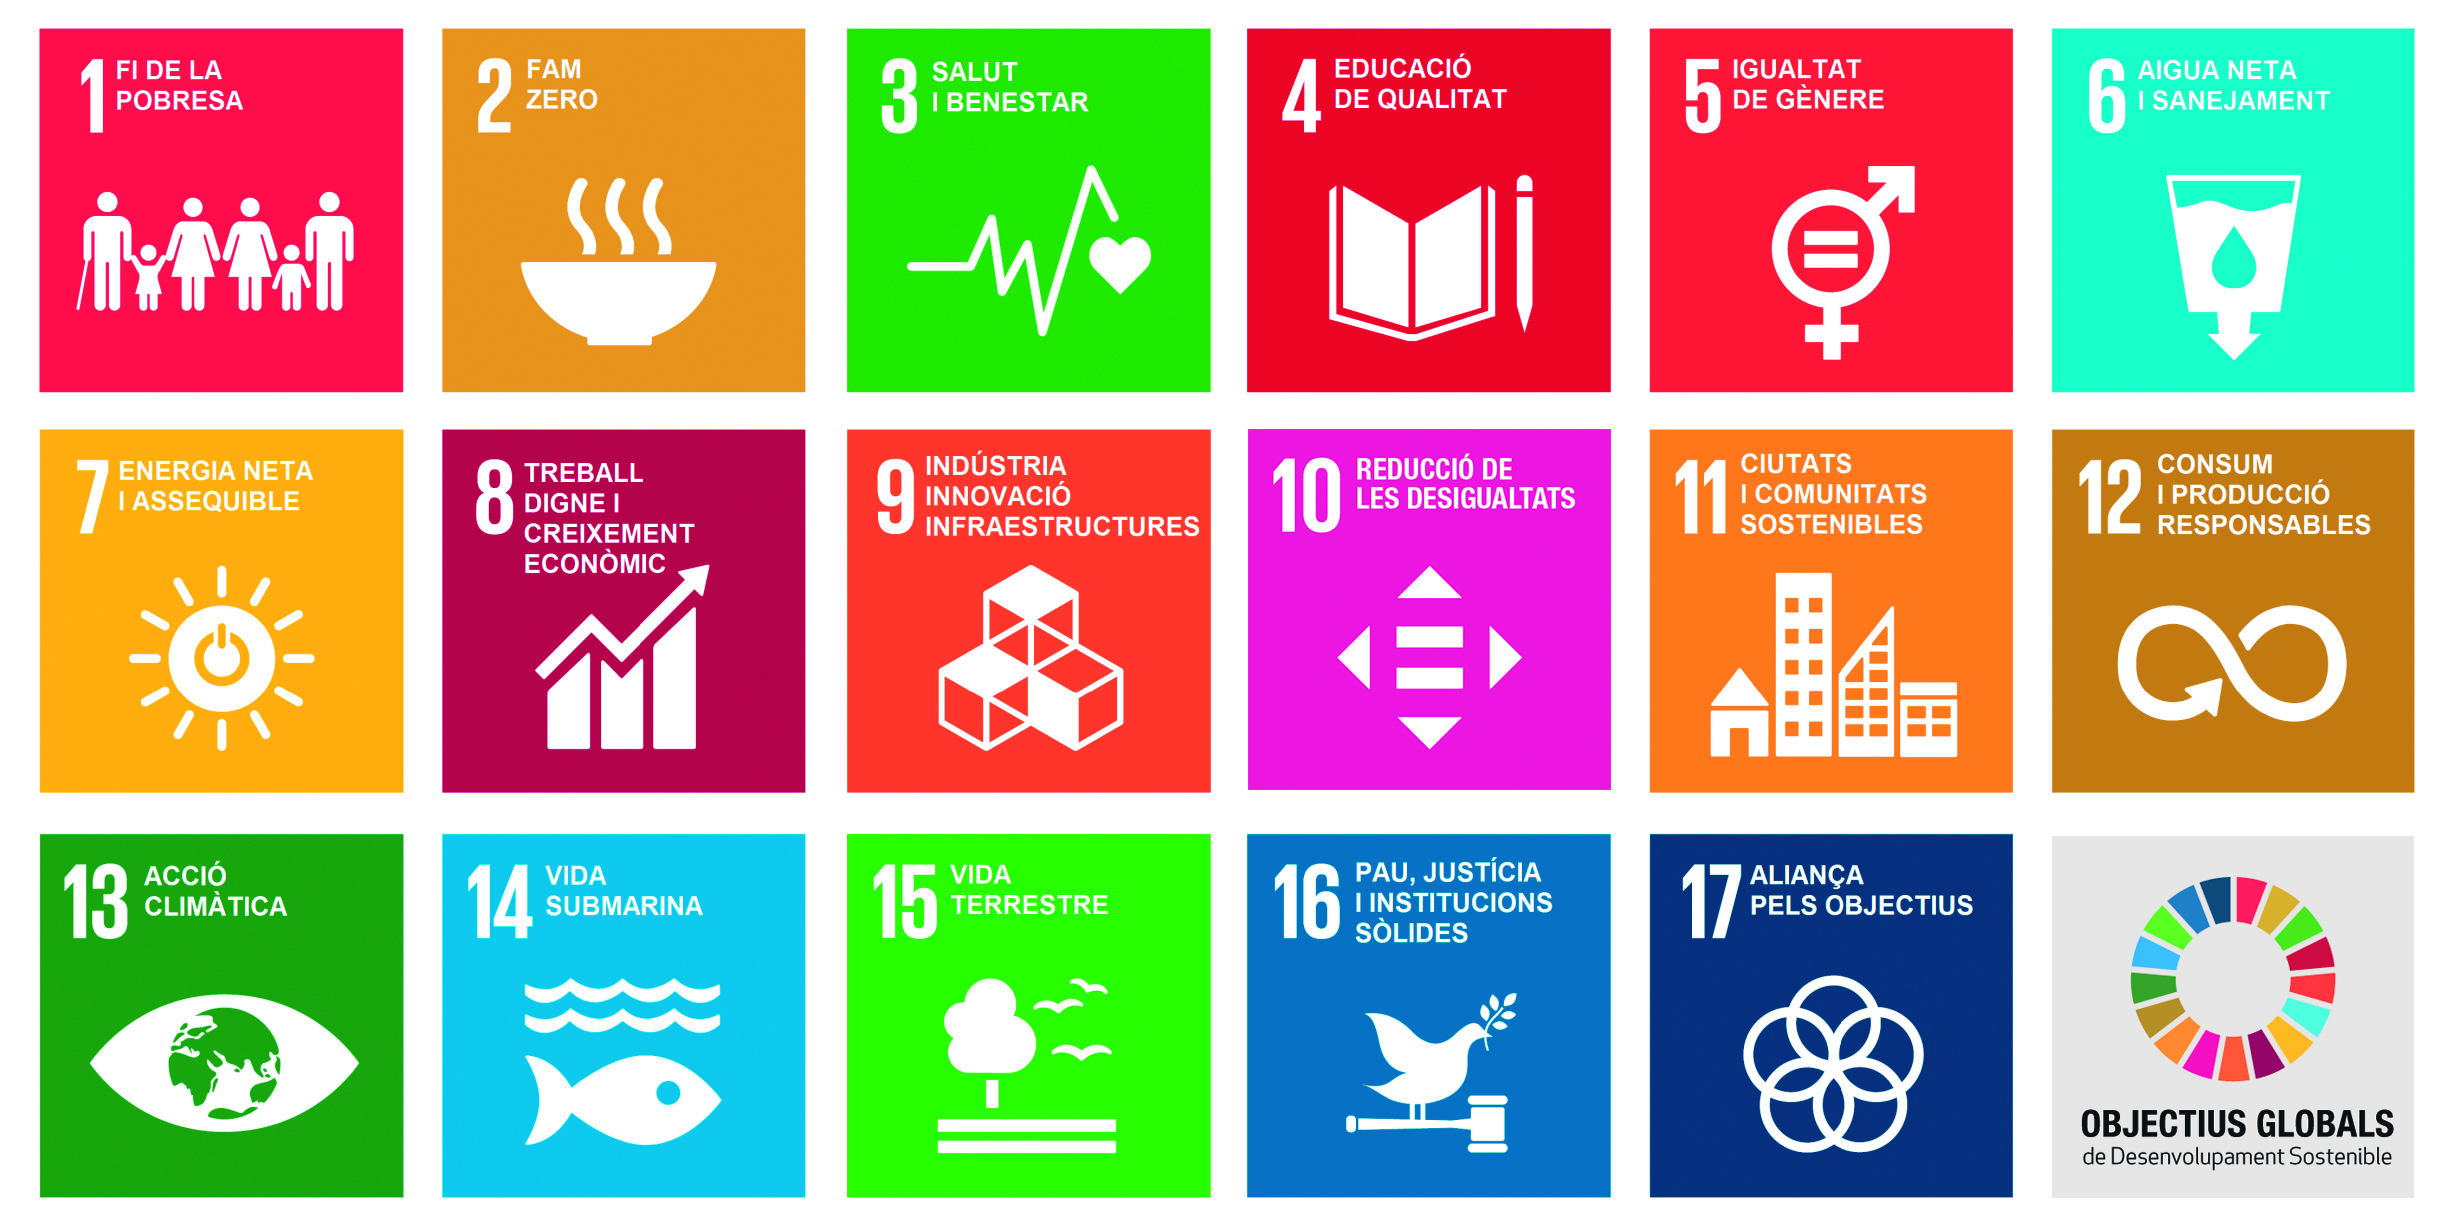 Transformar el nostre món: l'Agenda 2030 per al Desenvolupament Sostenible.